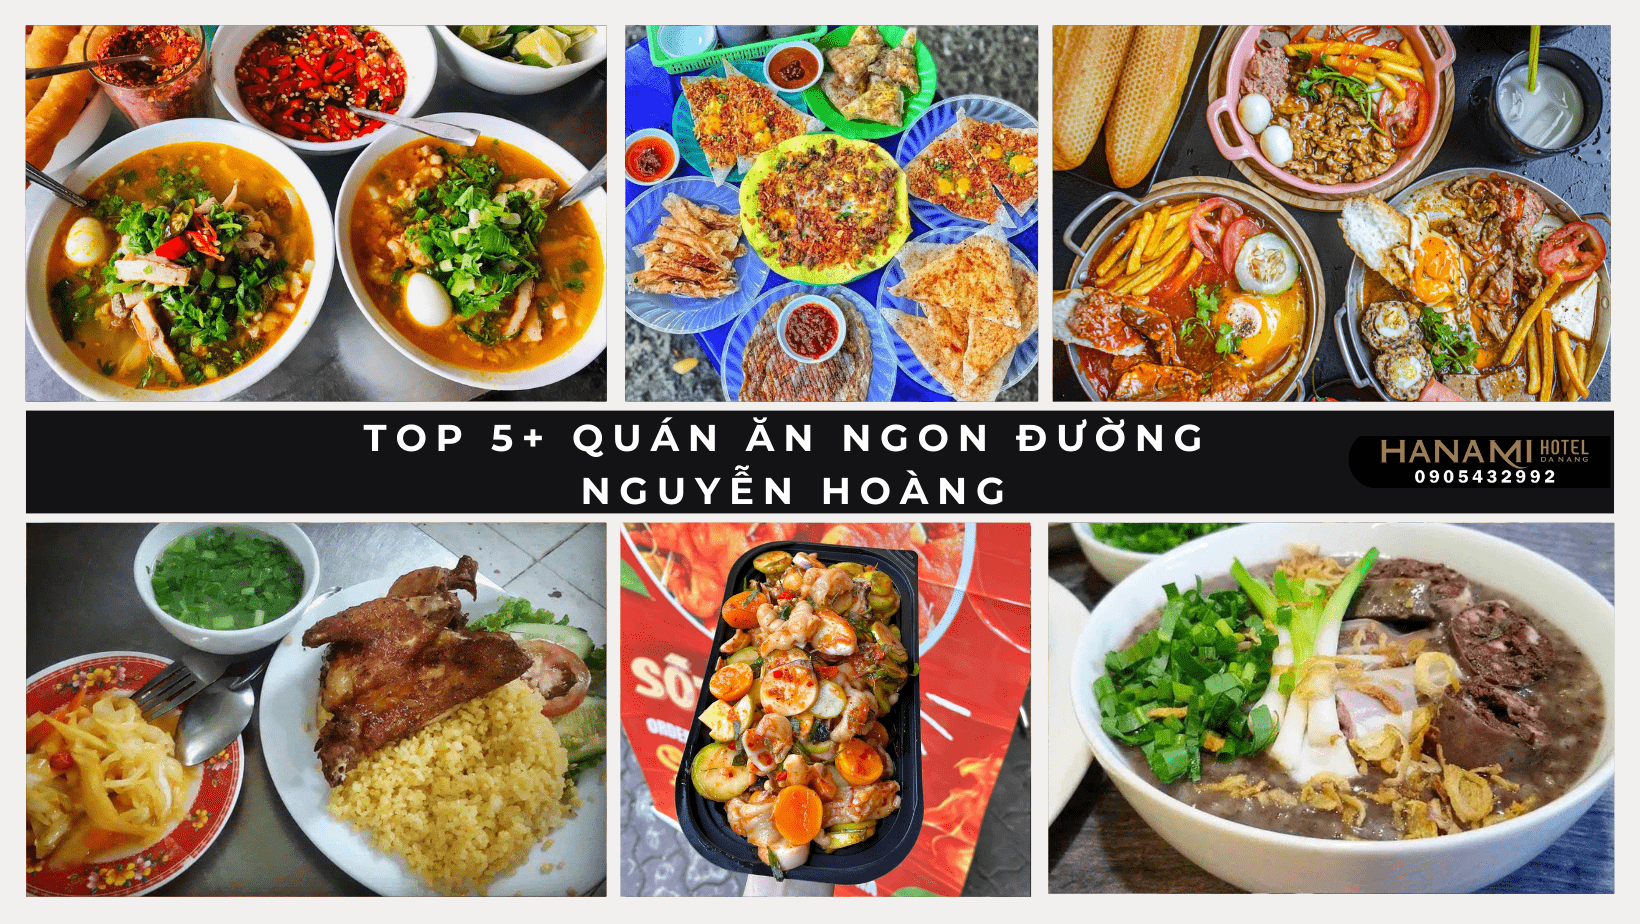 Gợi ý top 5+ quán ăn ngon đường Nguyễn Hoàng bạn nên biết